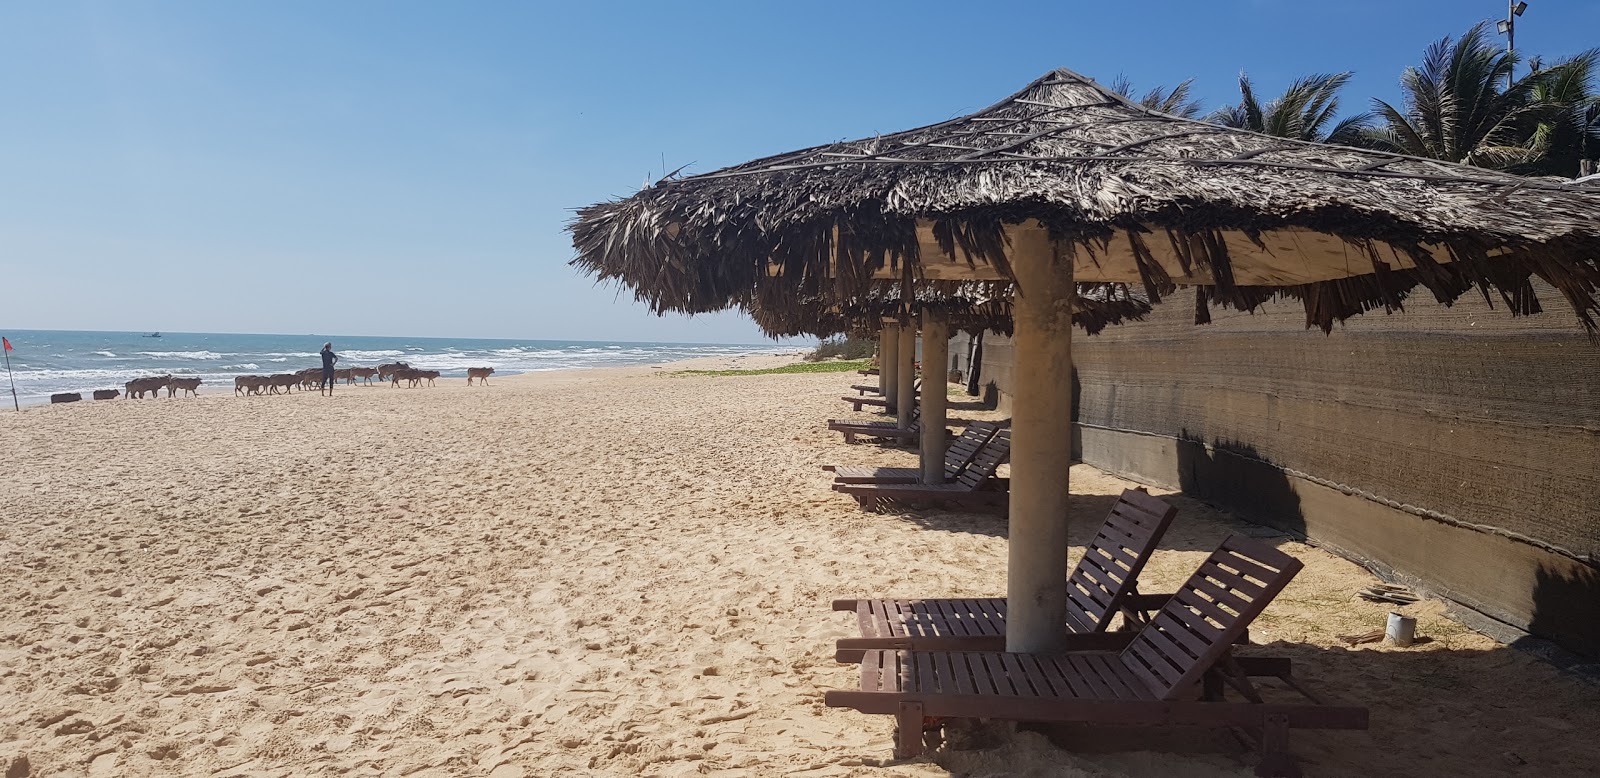 Zdjęcie Aloha Phan Thiet Beach - popularne miejsce wśród znawców relaksu